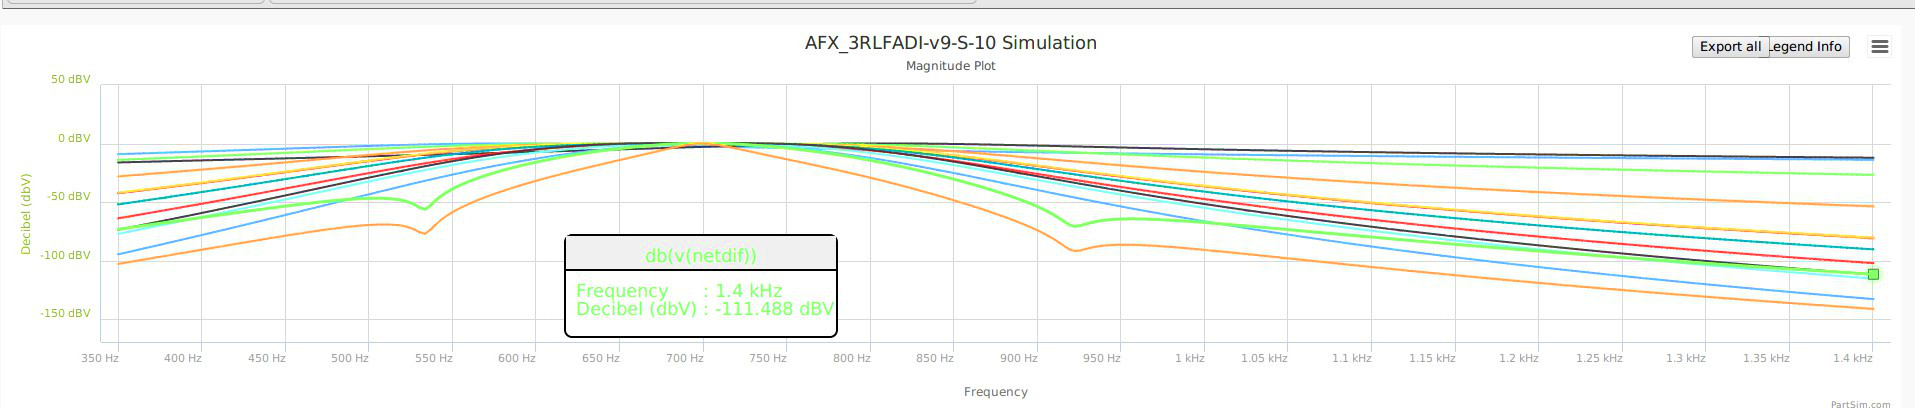 AFX_3RLFADI-v9-M-10-160715-1845-Udif-1400.jpg